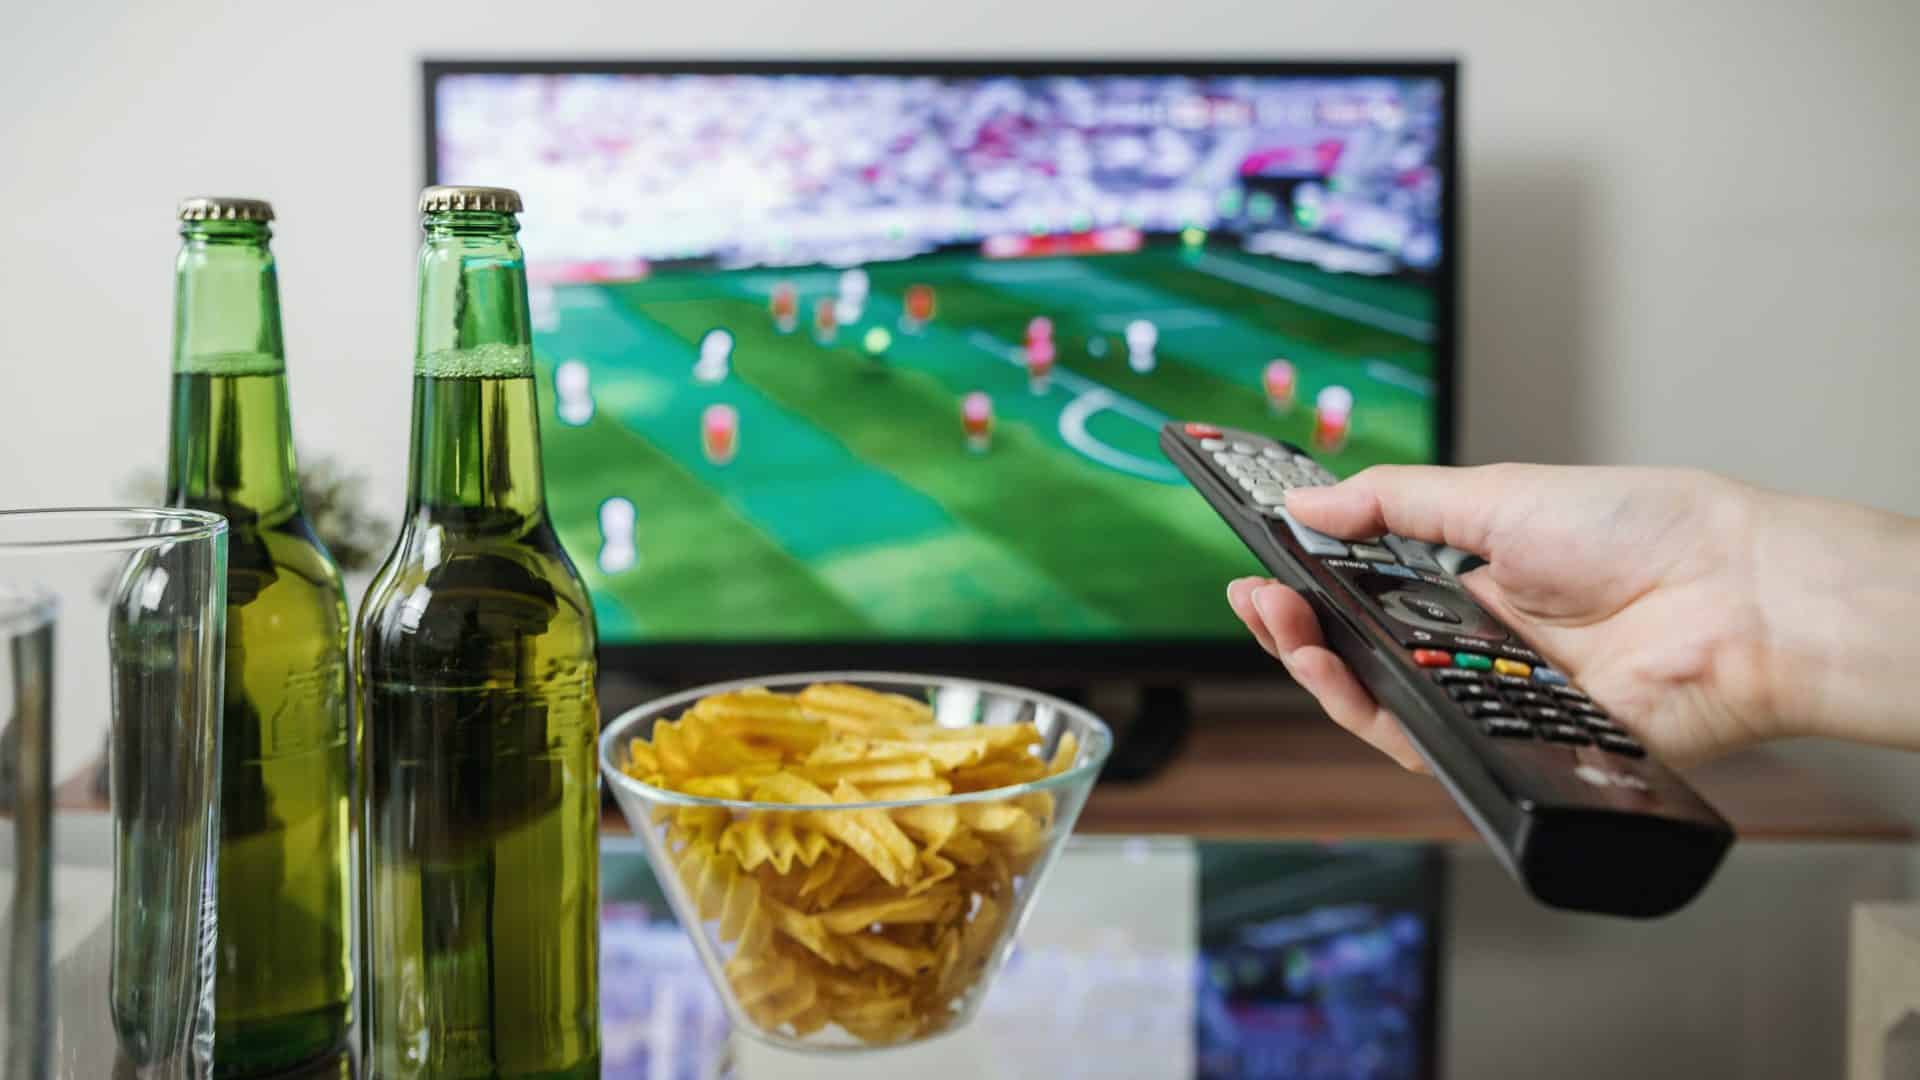 Afbeelding van een televisie op de achtergrond en op het tafeltje staan twee flesjes bier en een bakje chips.  